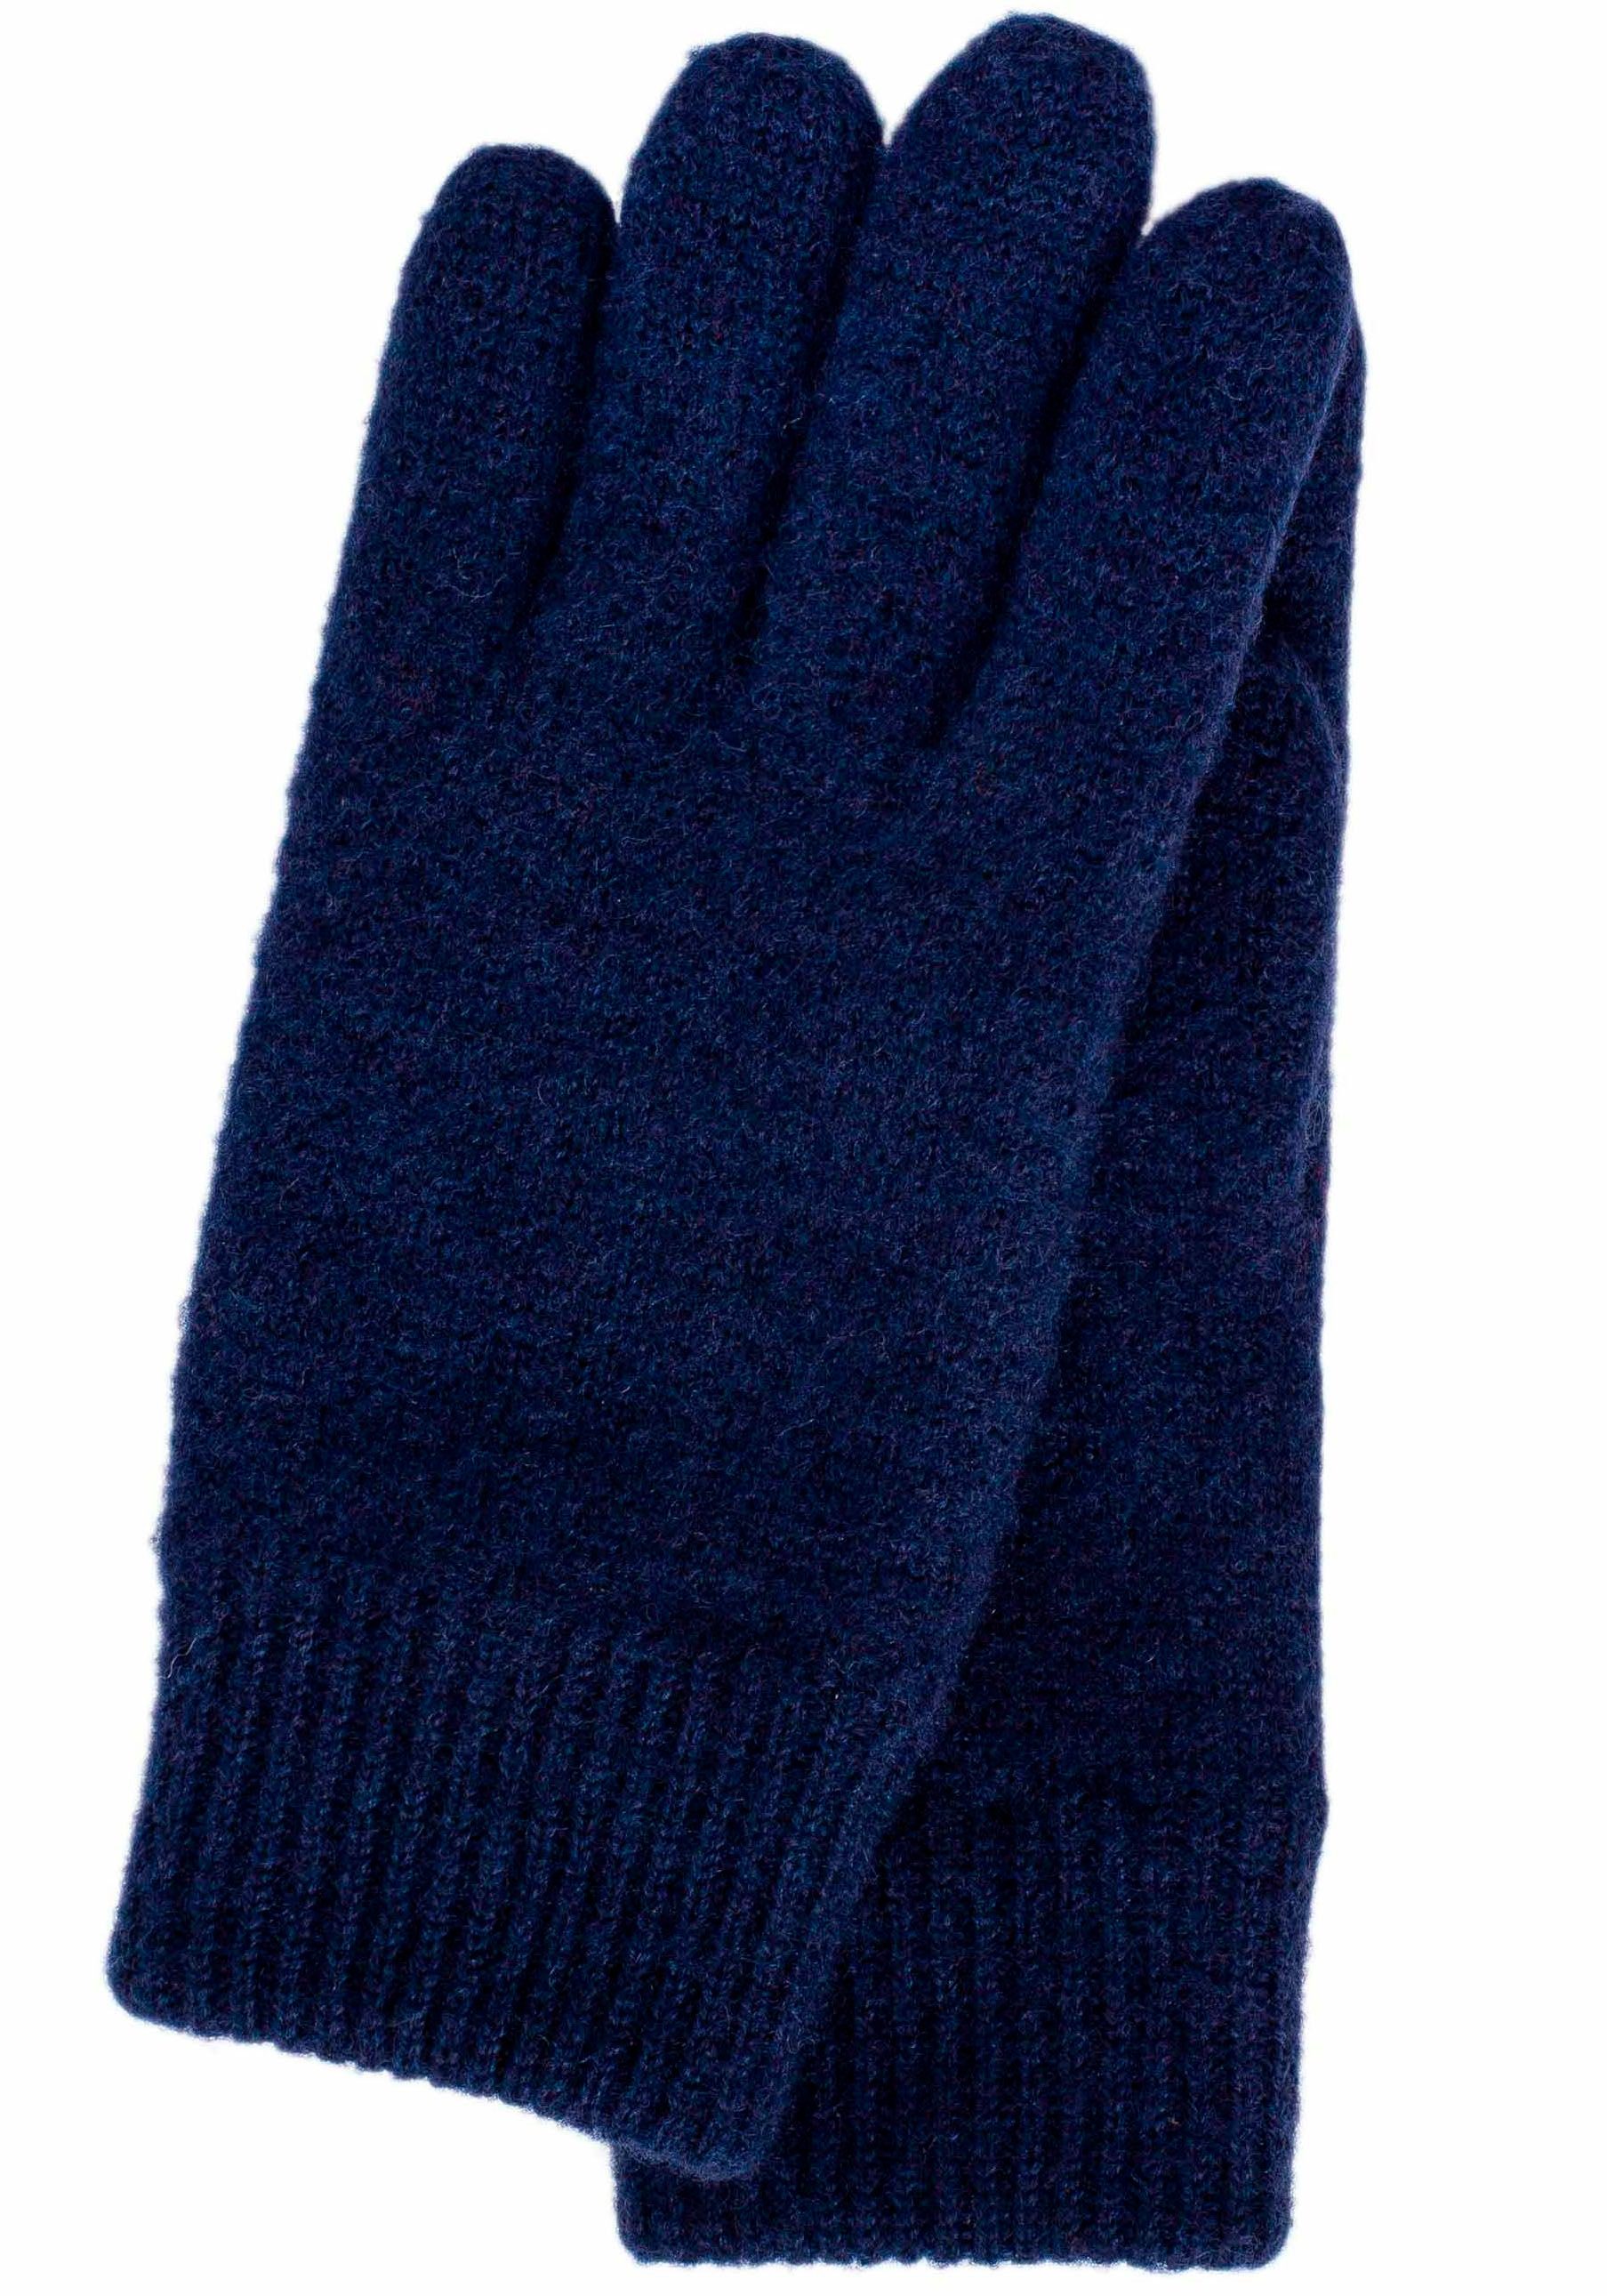 KESSLER Strickhandschuhe wasserabweisend, Strickbund blue und wind- dark